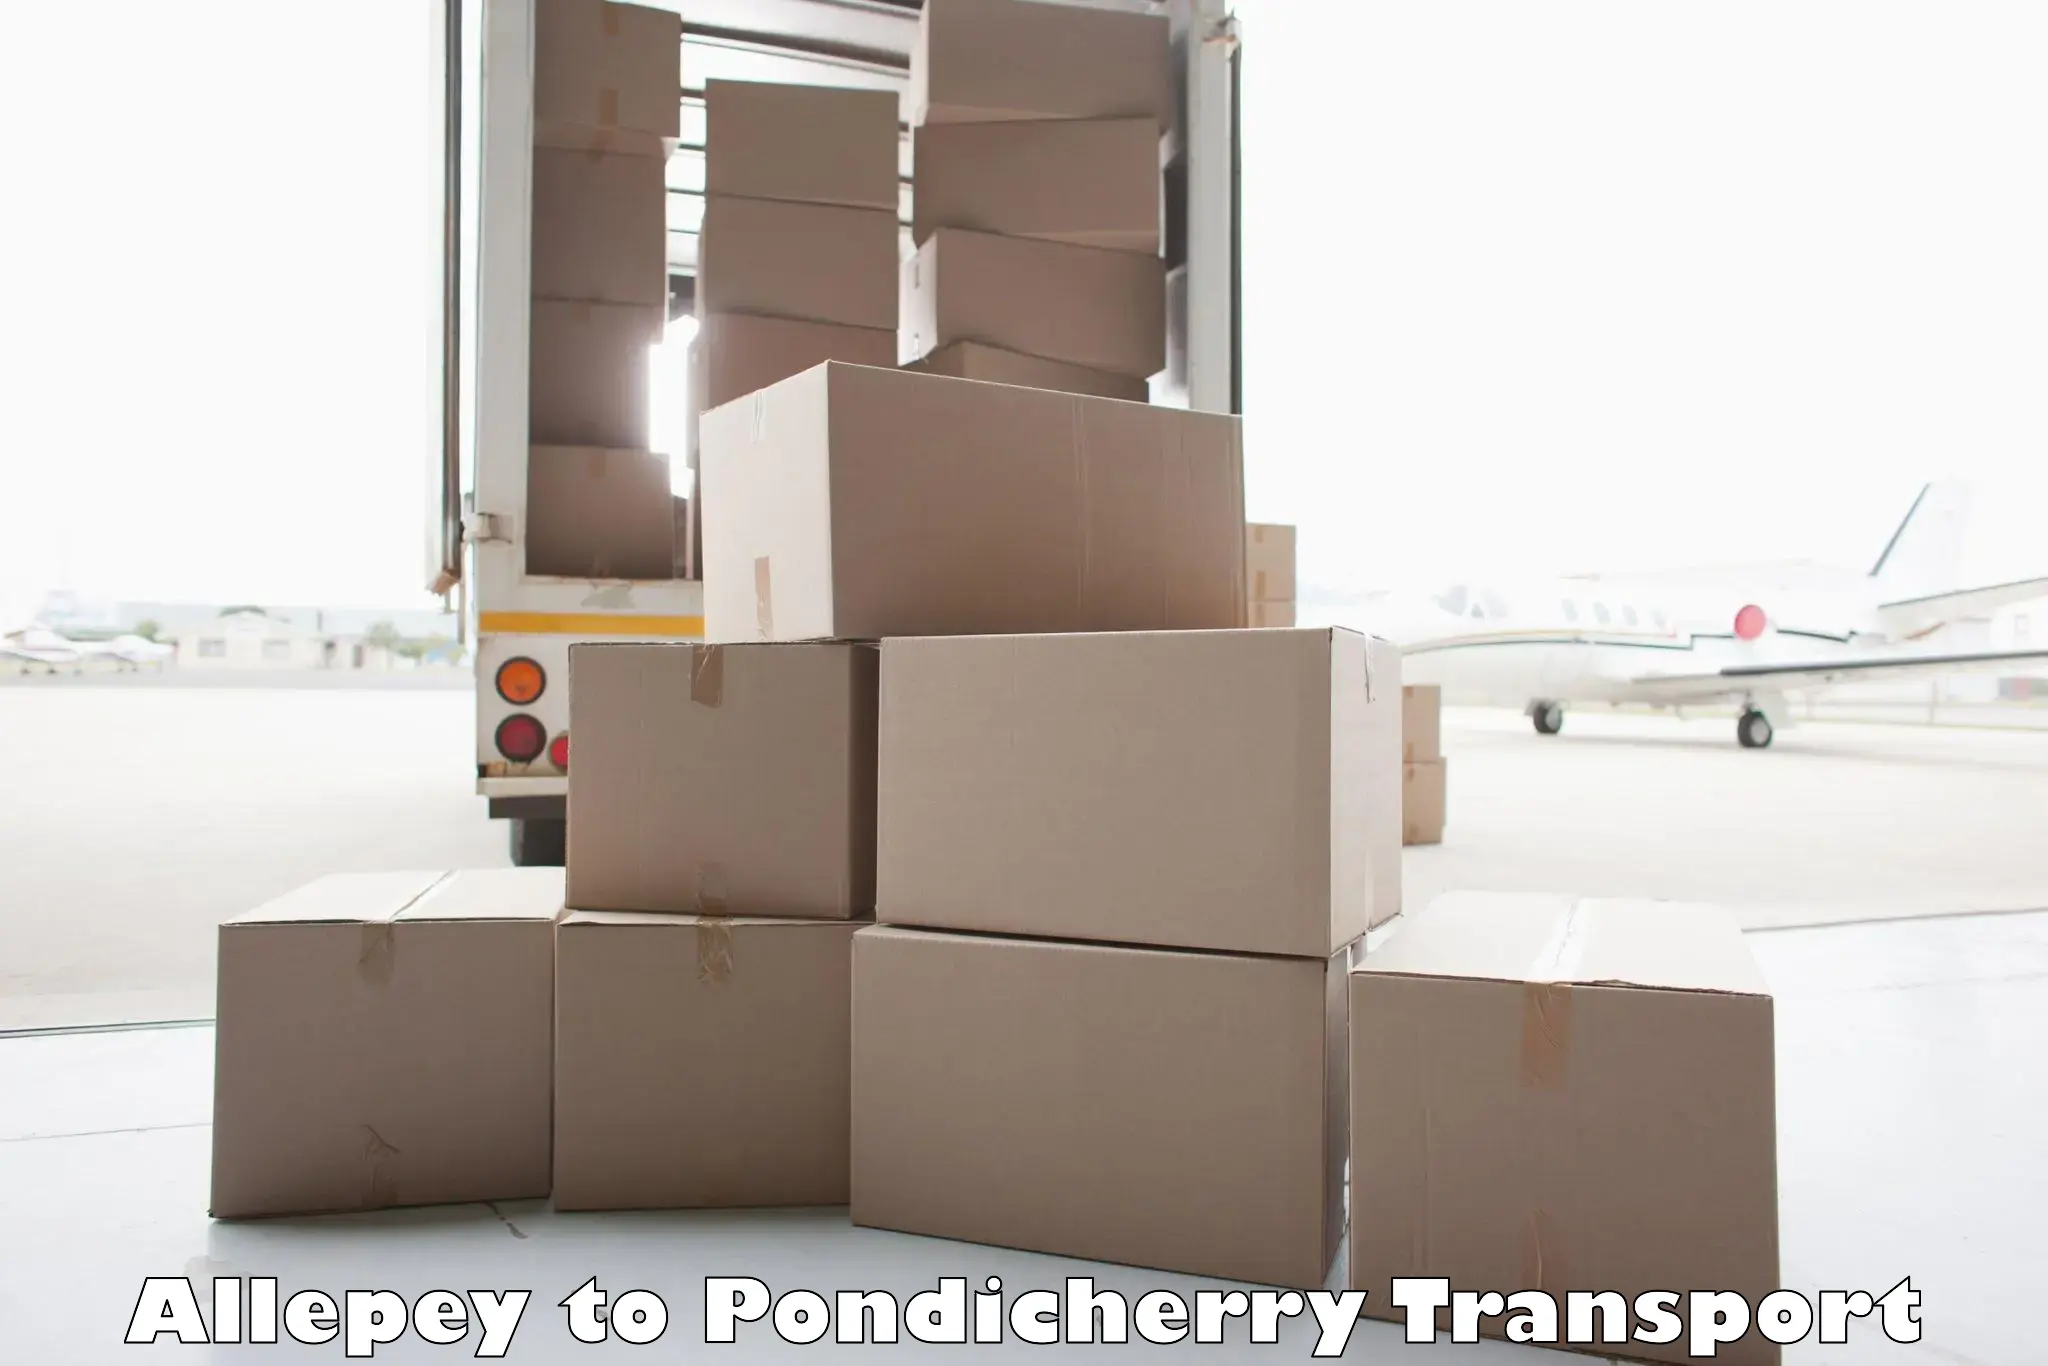 Online transport service Allepey to Pondicherry